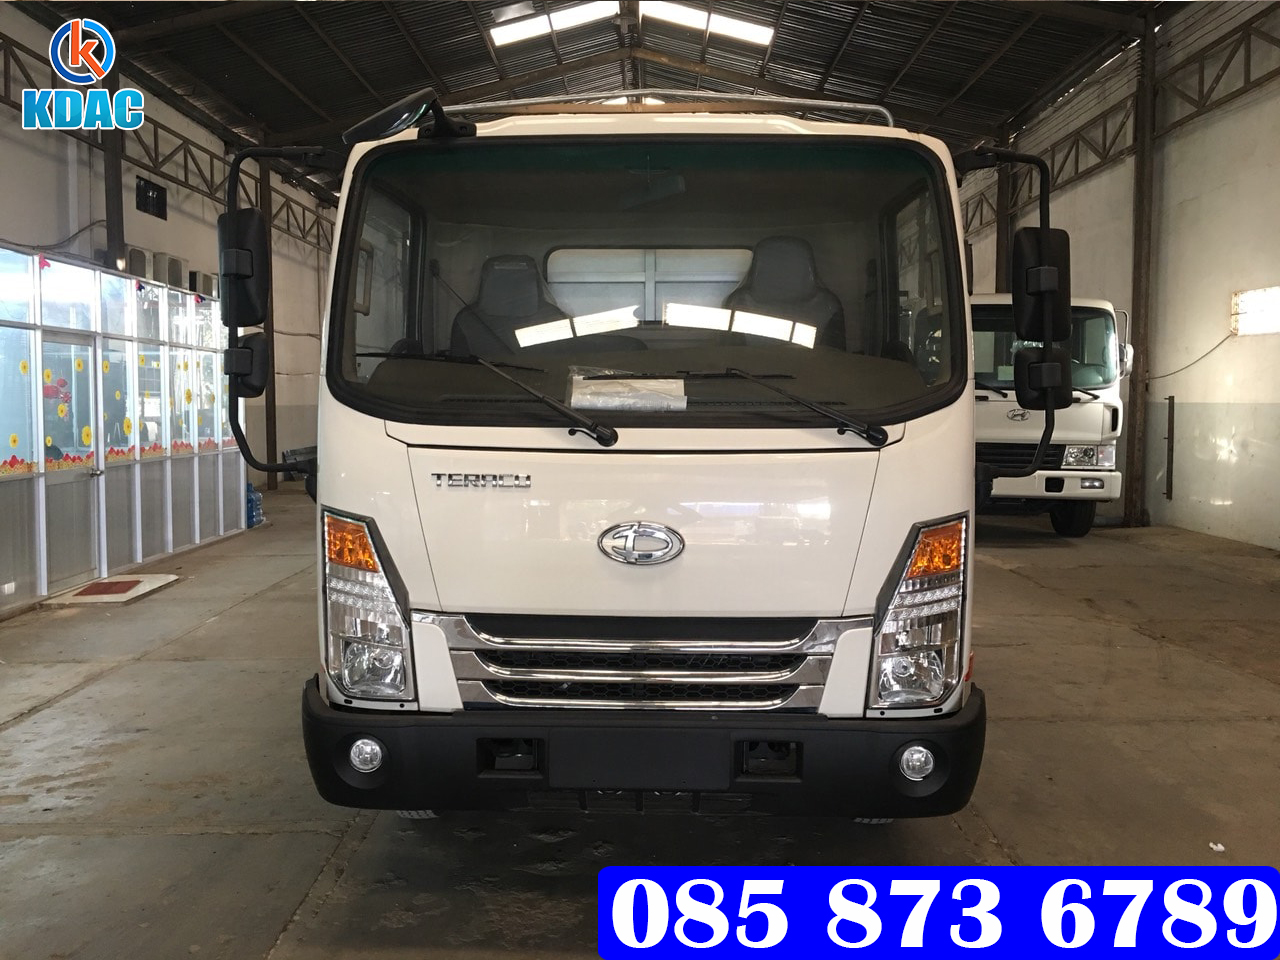 Chợ ôtô:  Xe tải Teraco 2T45 - Tera245L, Xe tải Teraco 2t45 thùng kín 5